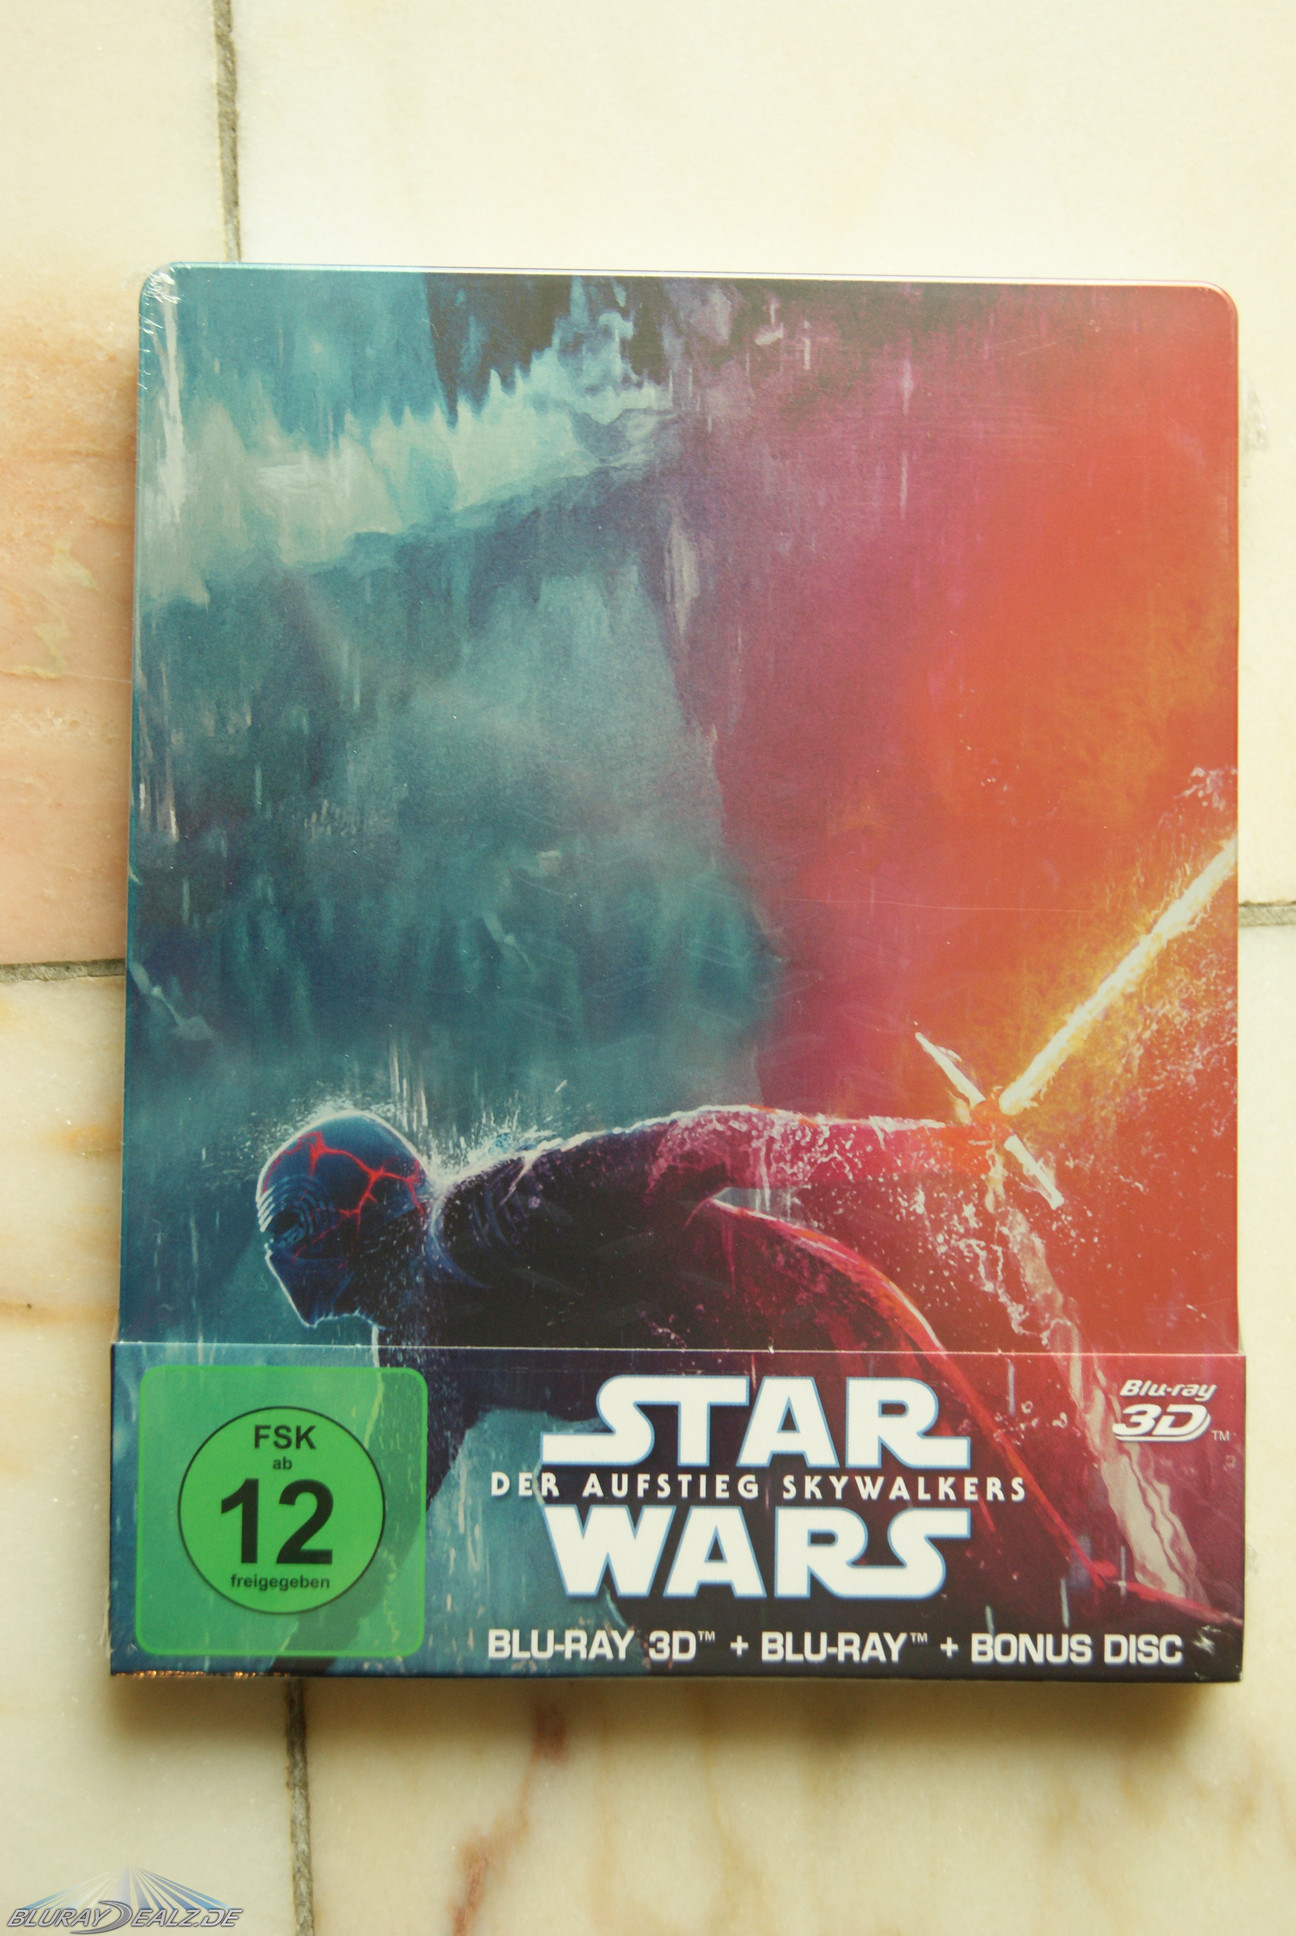 Starwars  Das Erwachen Der Macht (Steel-Edition) Blu-ray auf Blu